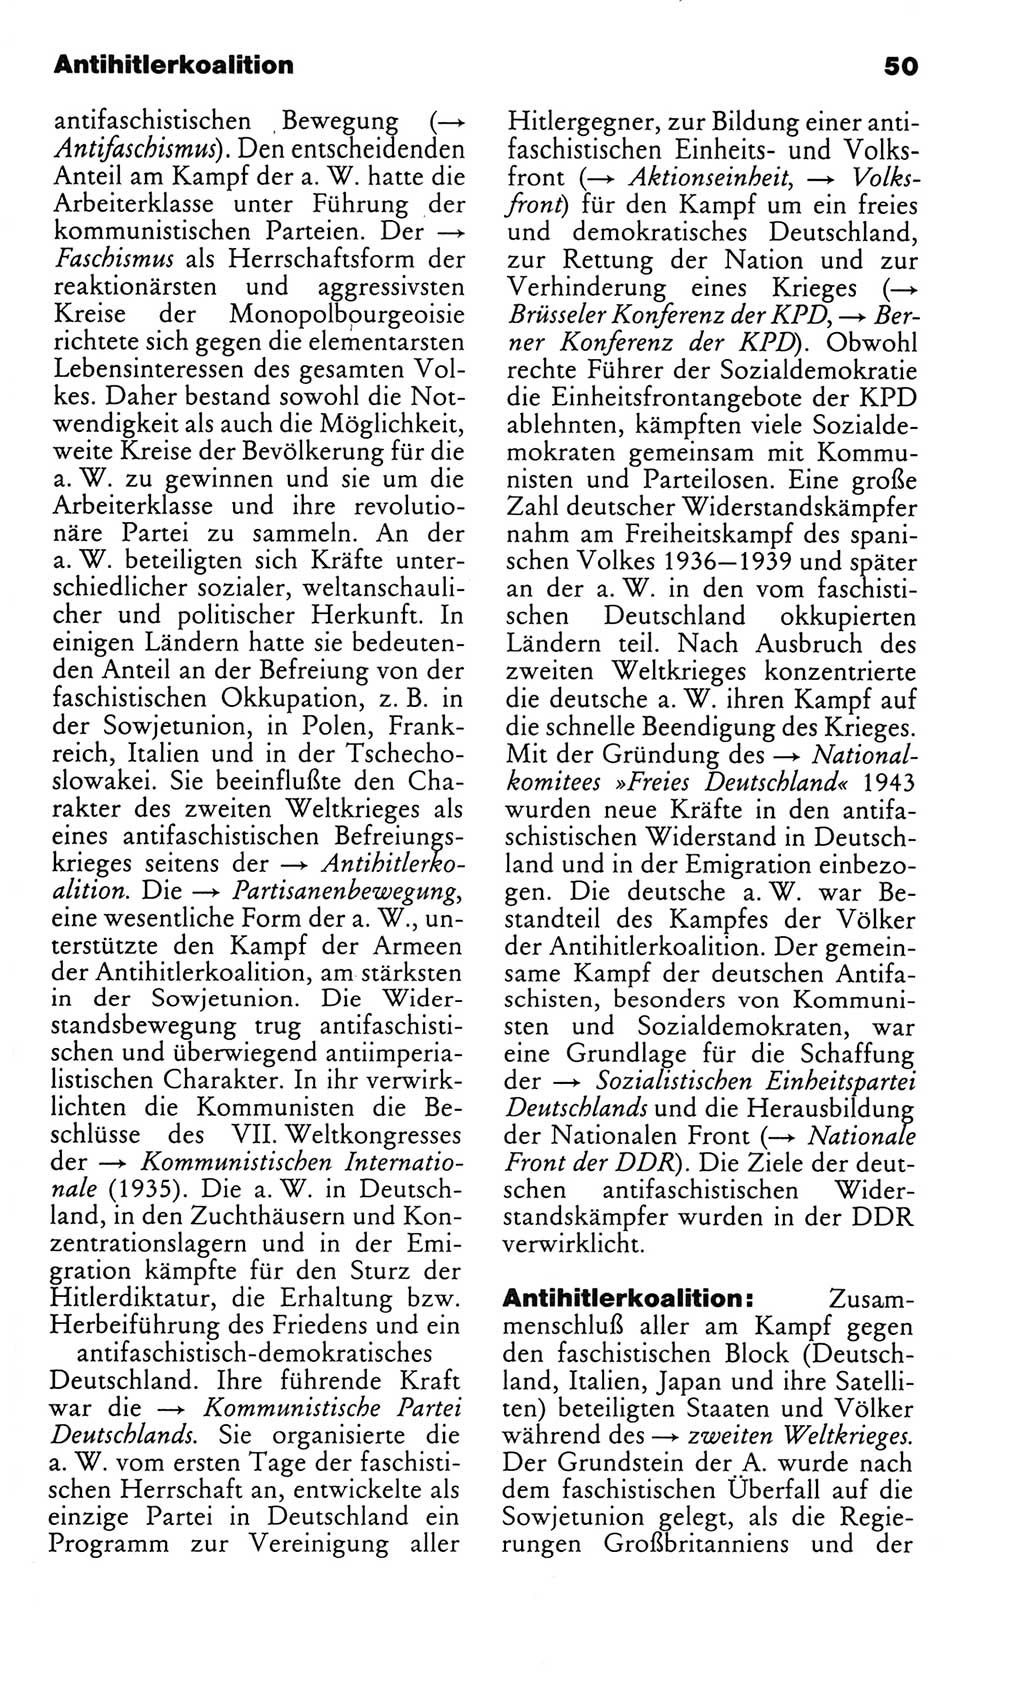 Kleines politisches Wörterbuch [Deutsche Demokratische Republik (DDR)] 1986, Seite 50 (Kl. pol. Wb. DDR 1986, S. 50)